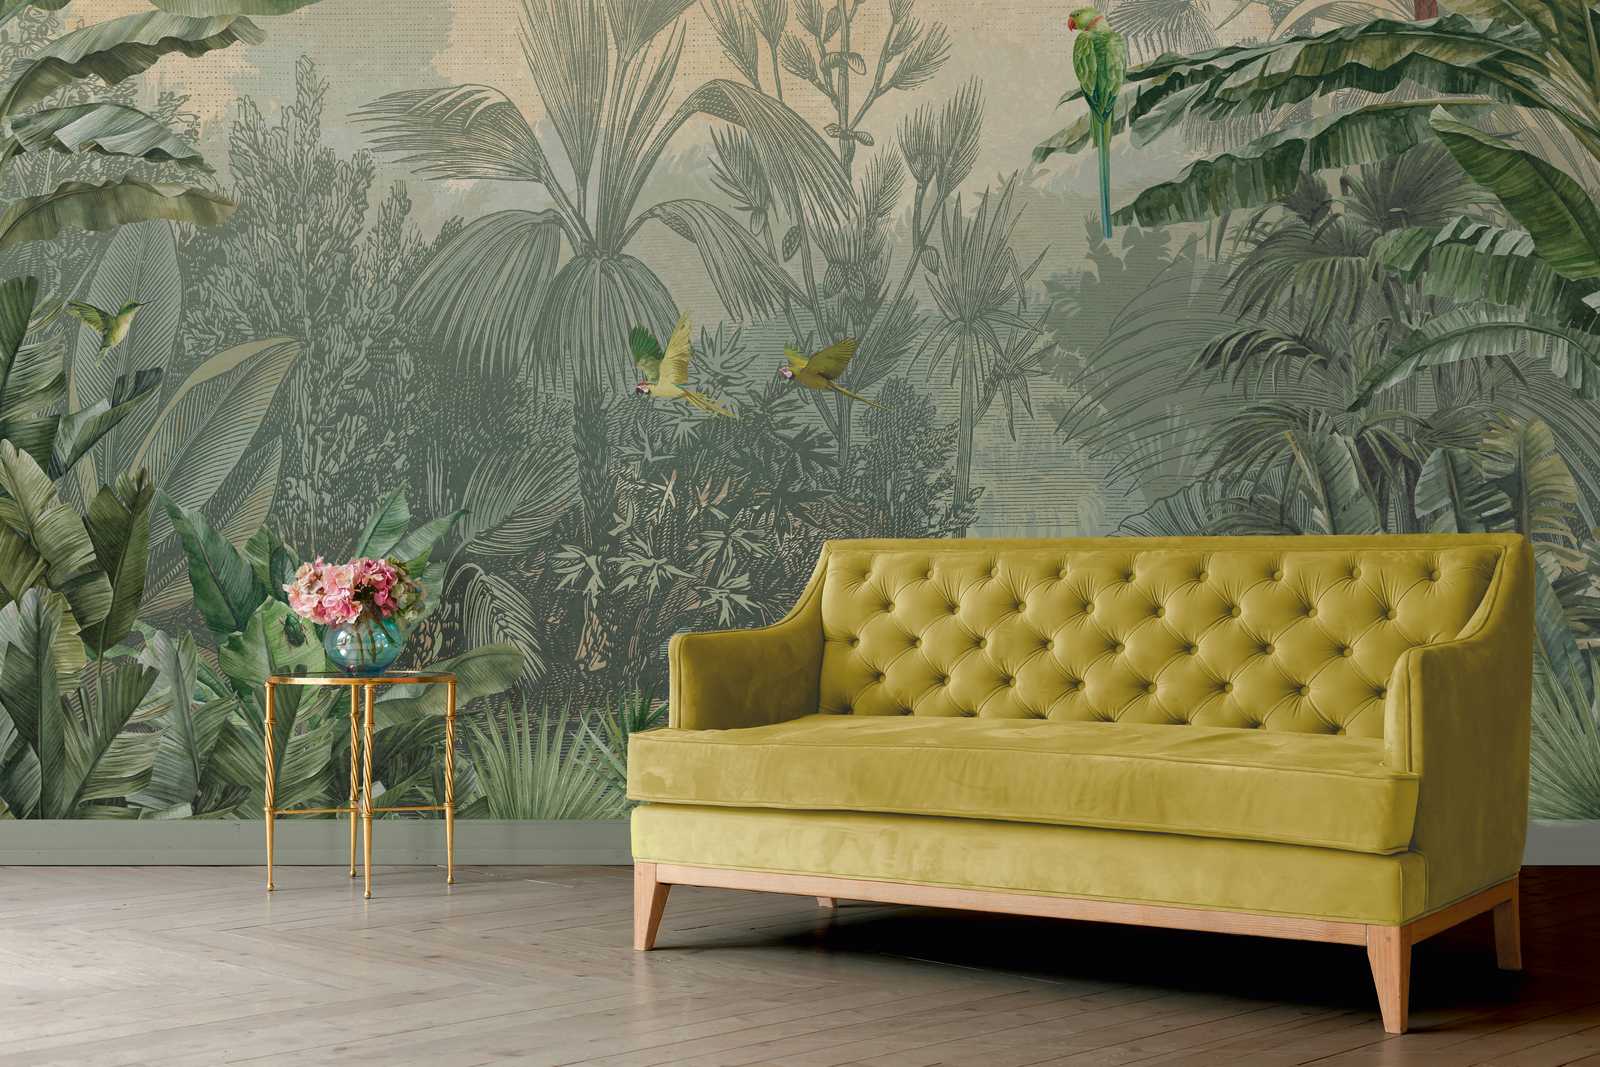             Papier peint panoramique vert jungle palmiers & perroquets style dessin
        